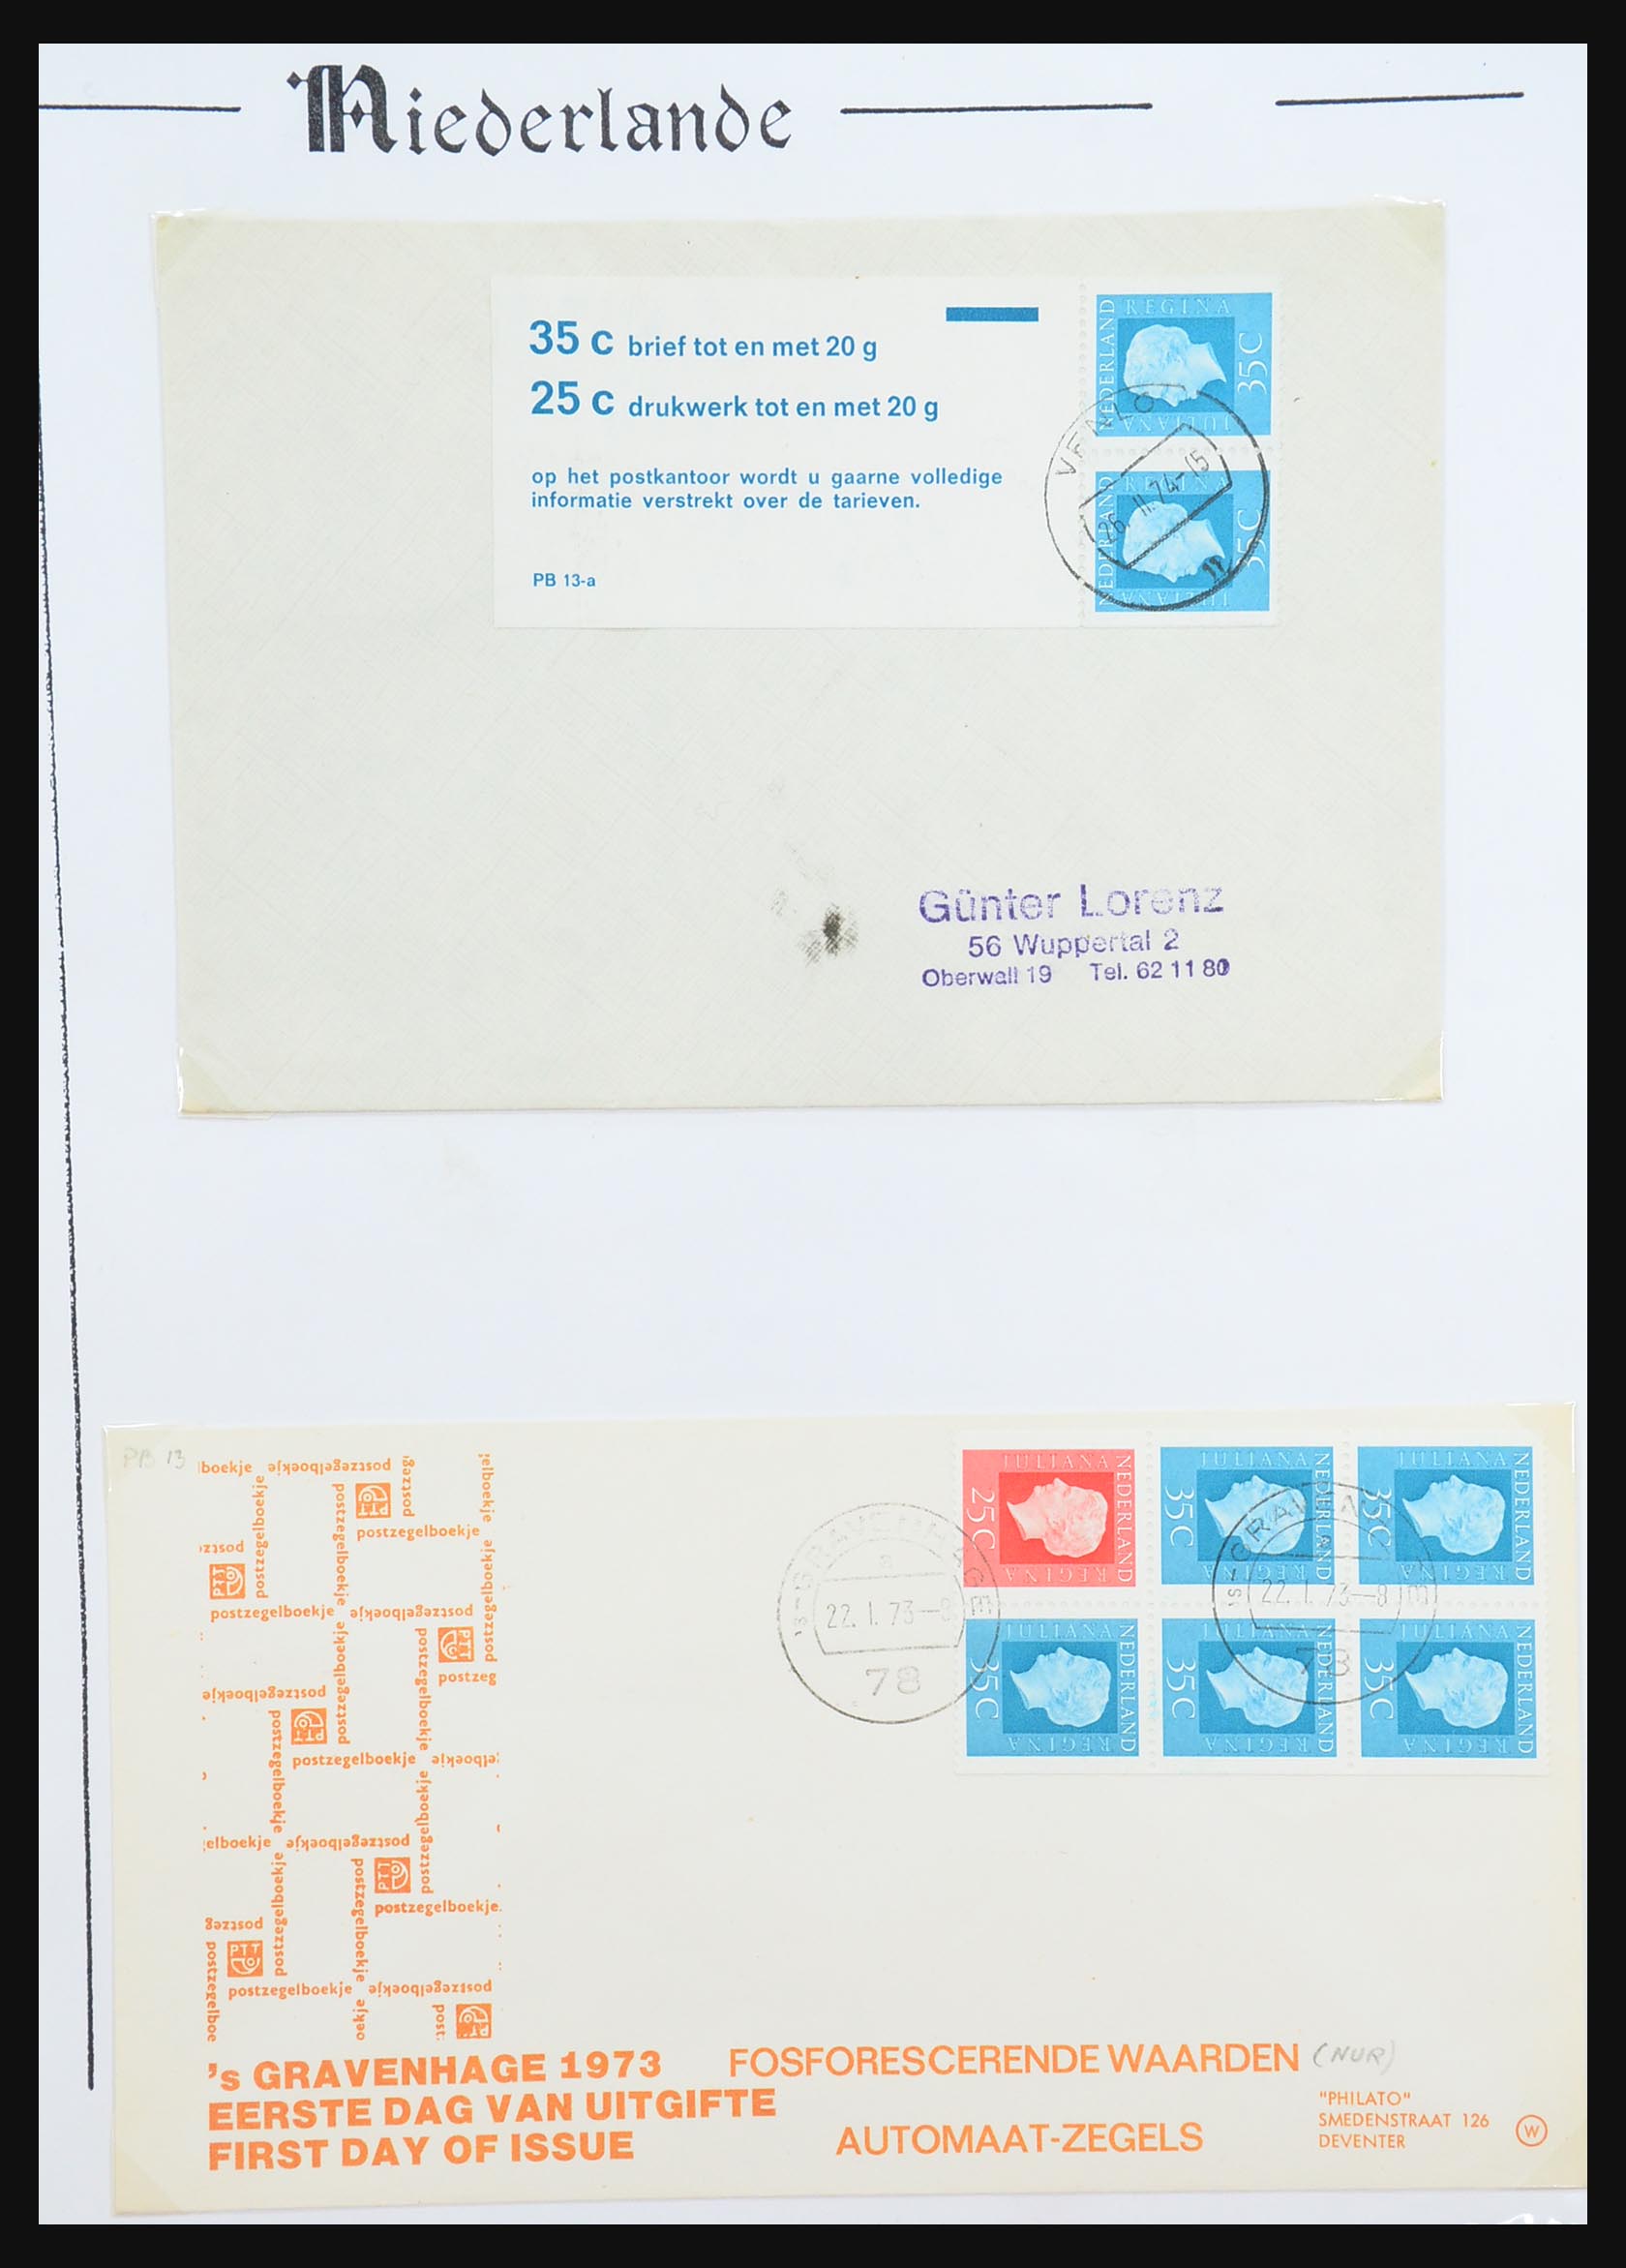 31311 051 - 31311 Netherlands stamp booklets 1964-1994.